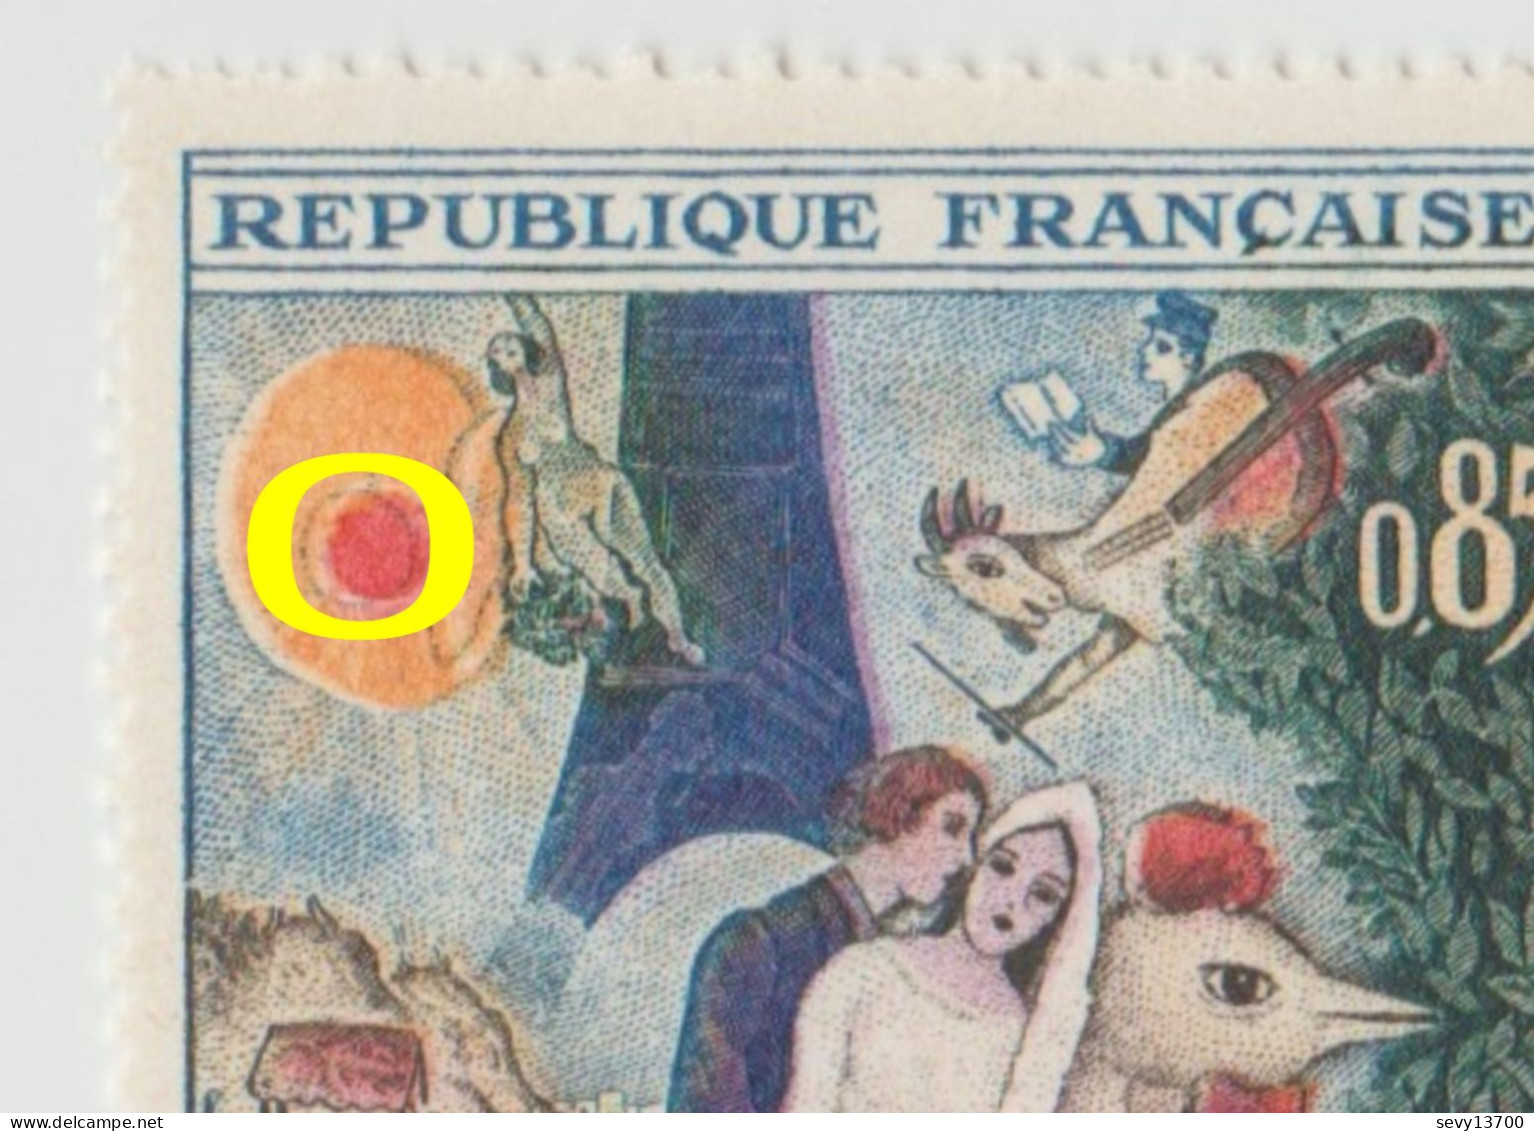 FRANCE Variété Sur 2 Timbres De 1963 YT 1398 Tableau M. Chagall - Croissant De Lune Dans Le Soleil - Décalage De Couleur - Unused Stamps